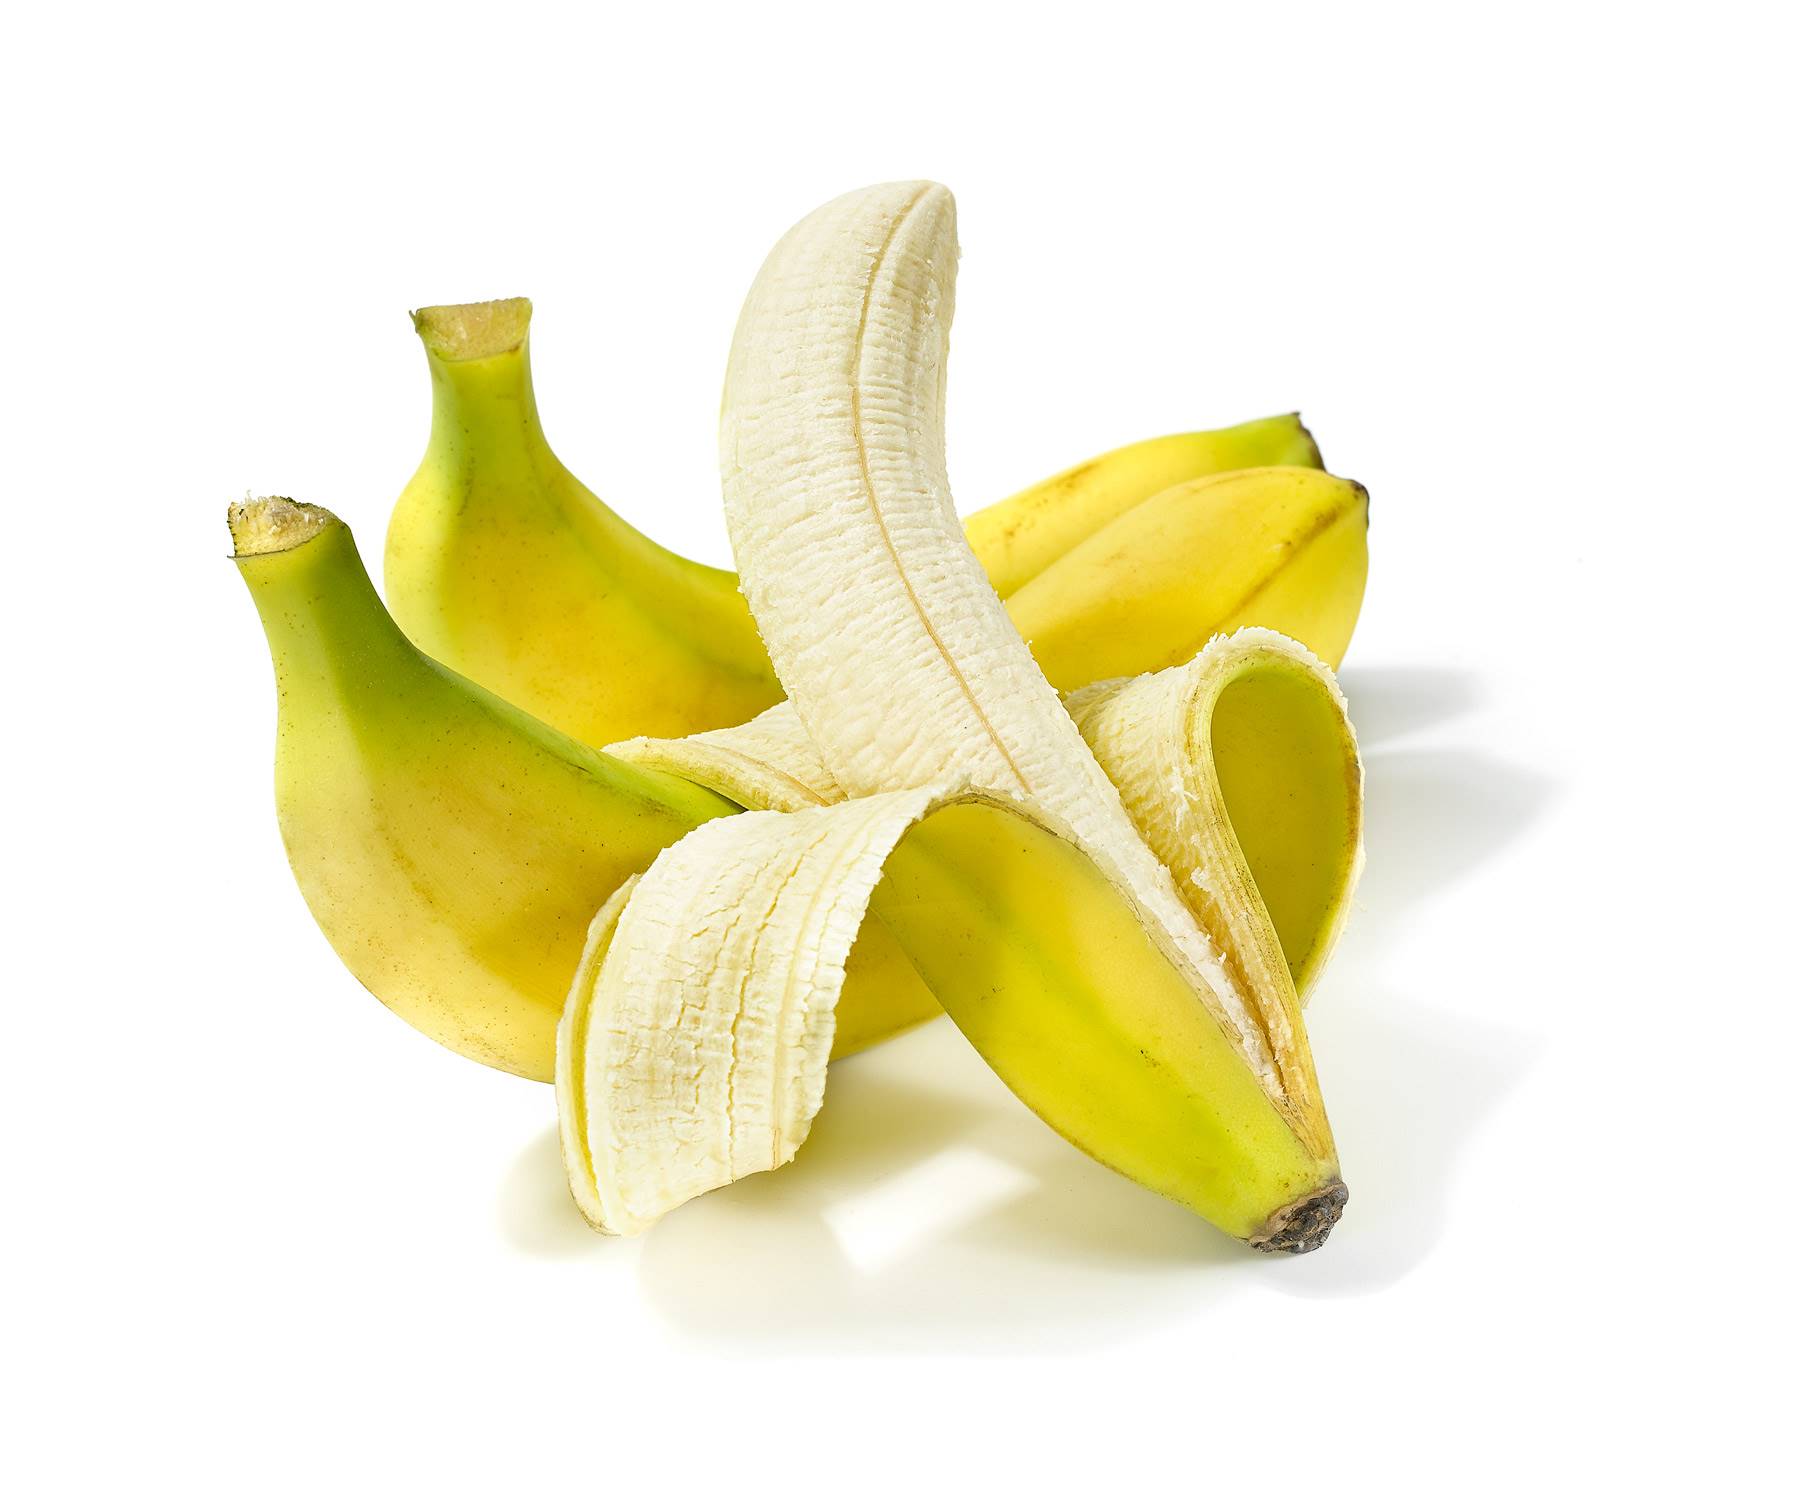 PLATANO. La energía del plátano